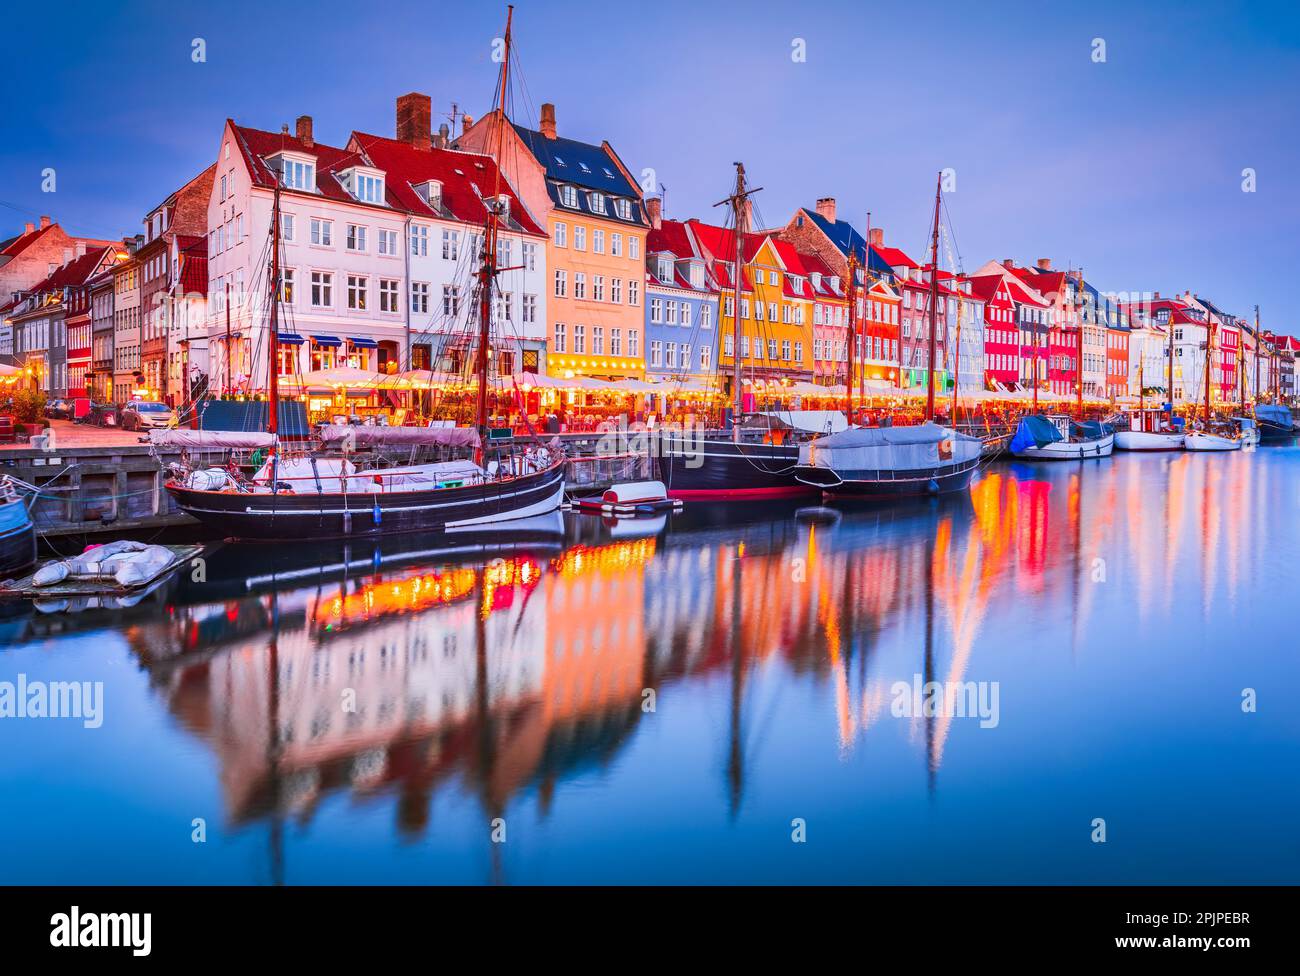 Der Charme von Kopenhagen, Dänemark in Nyhavn. Legendärer Kanal, farbenfrohe Morgendämmerung mit atemberaubenden Wasserreflexionen. Stockfoto